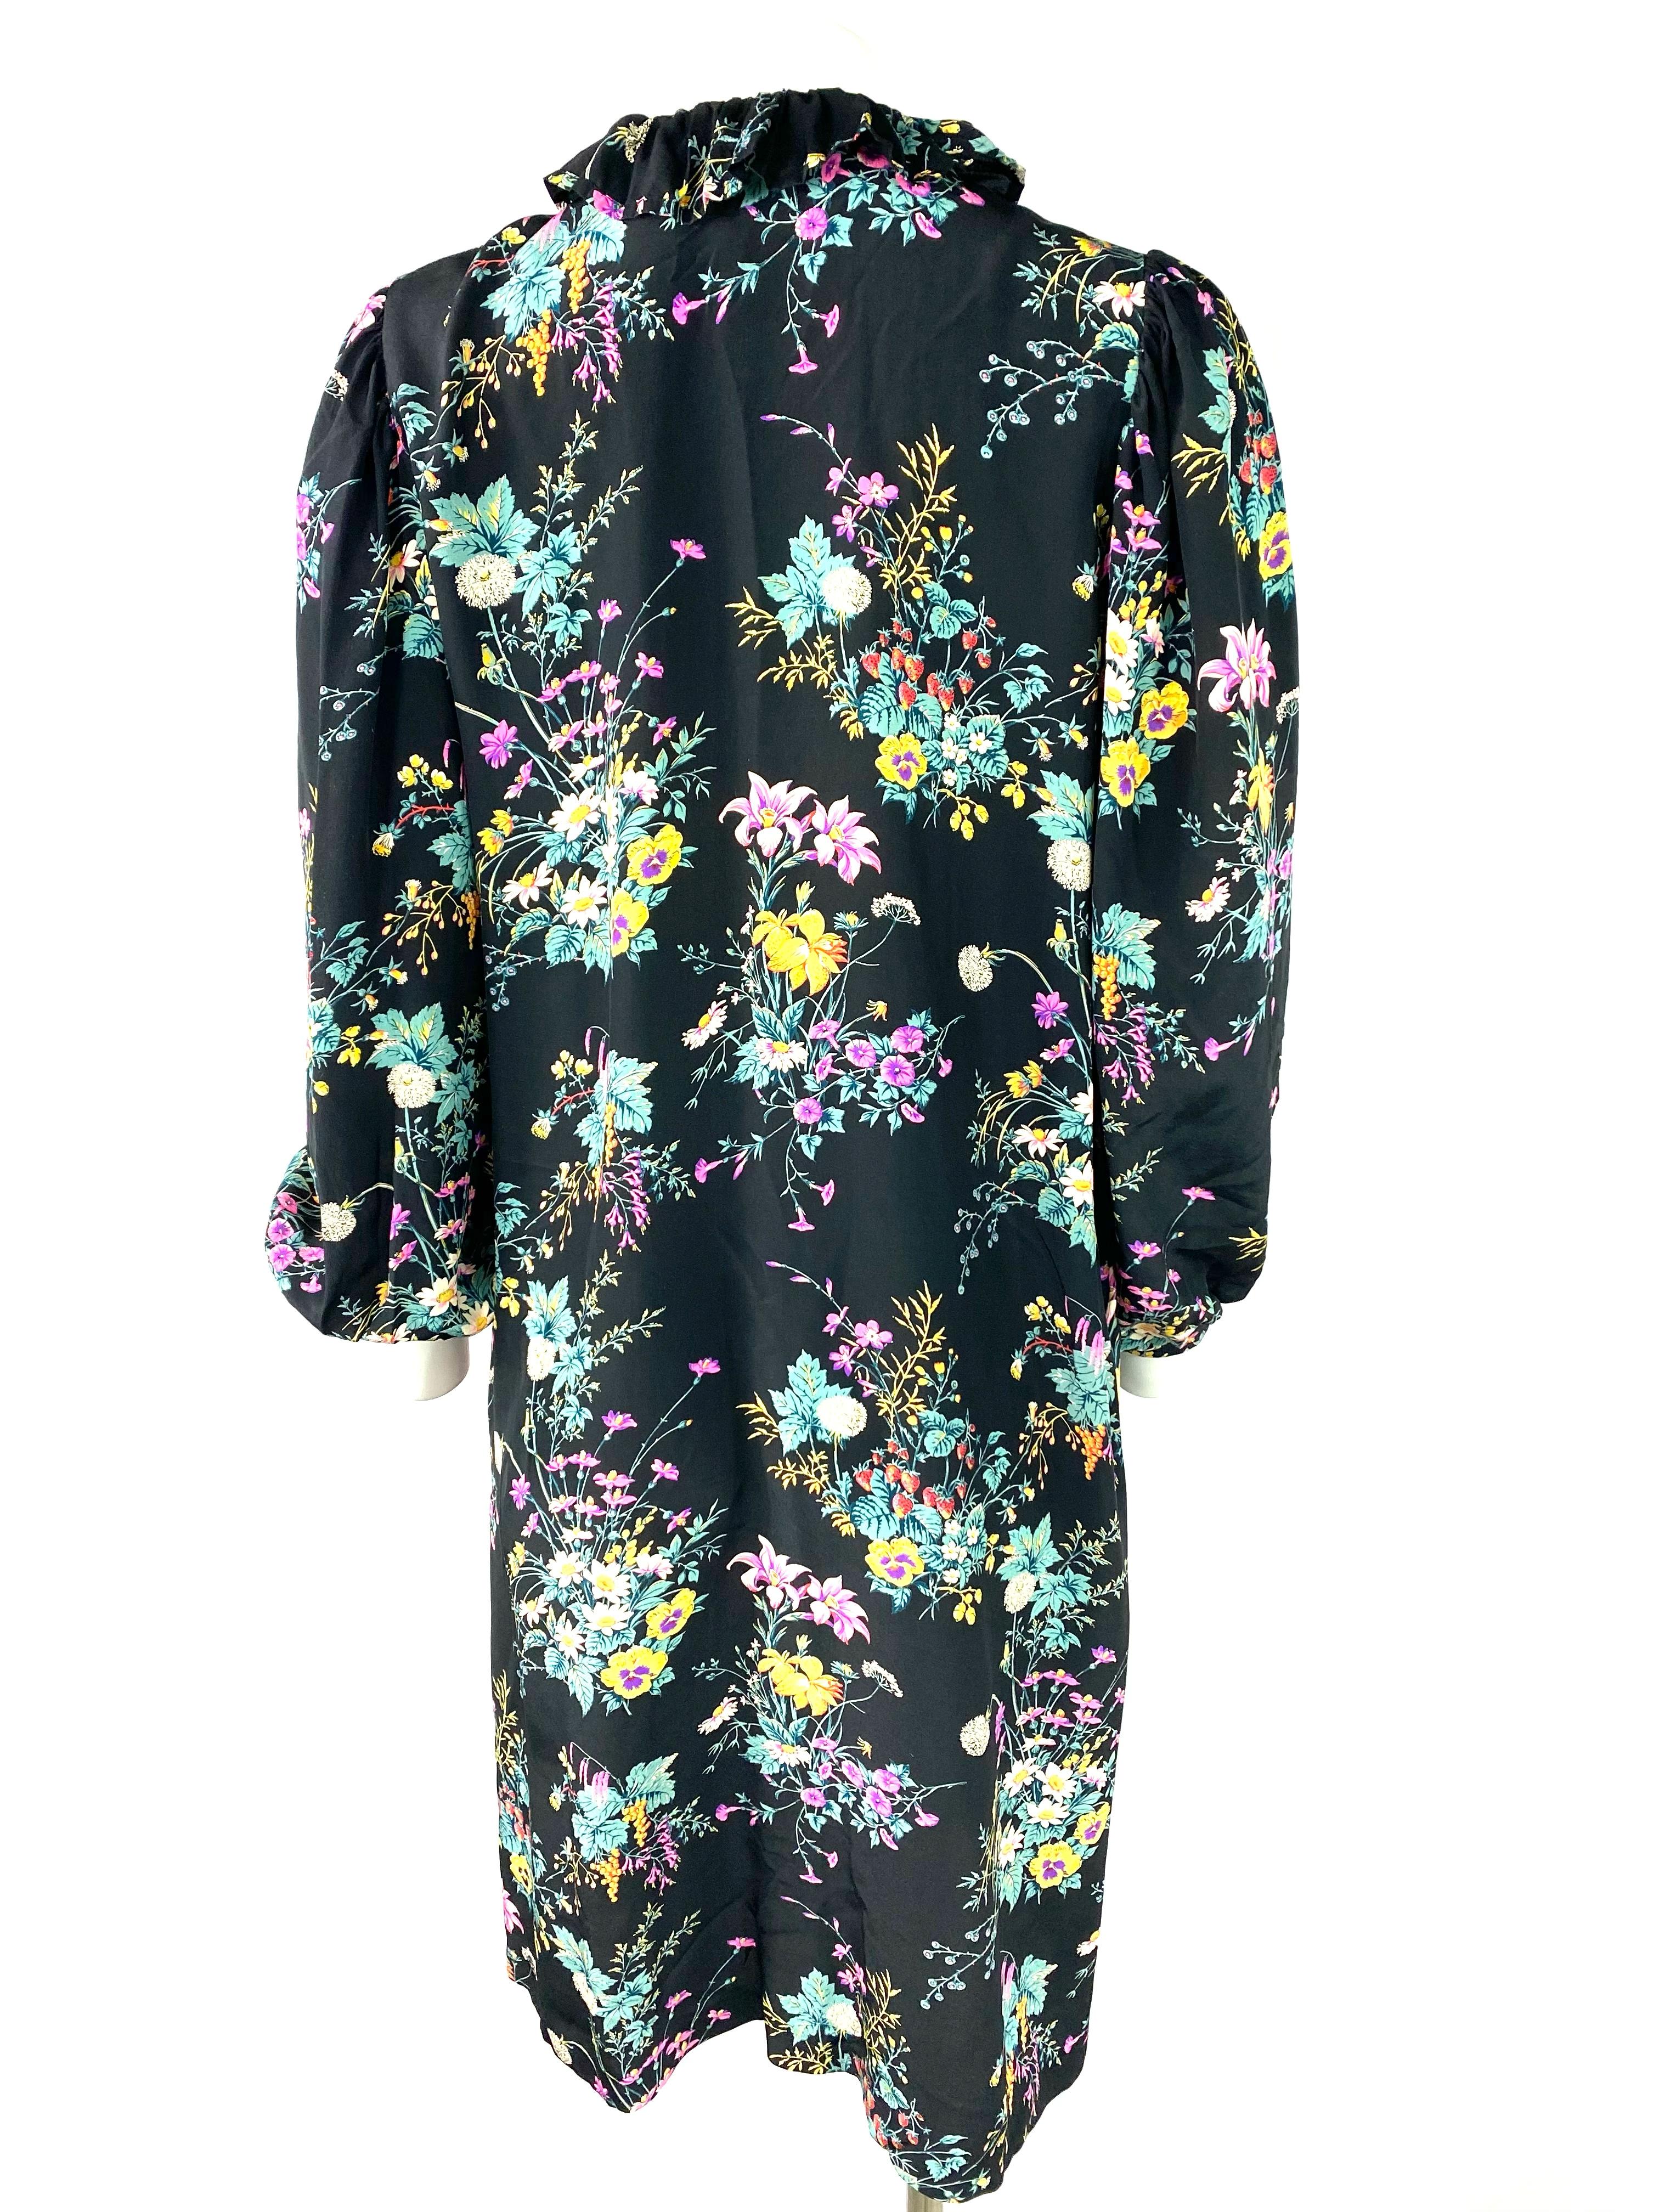 Hanae Mori Paris Black and Multi Colored Silk Mini Dress, Size Small For Sale 1